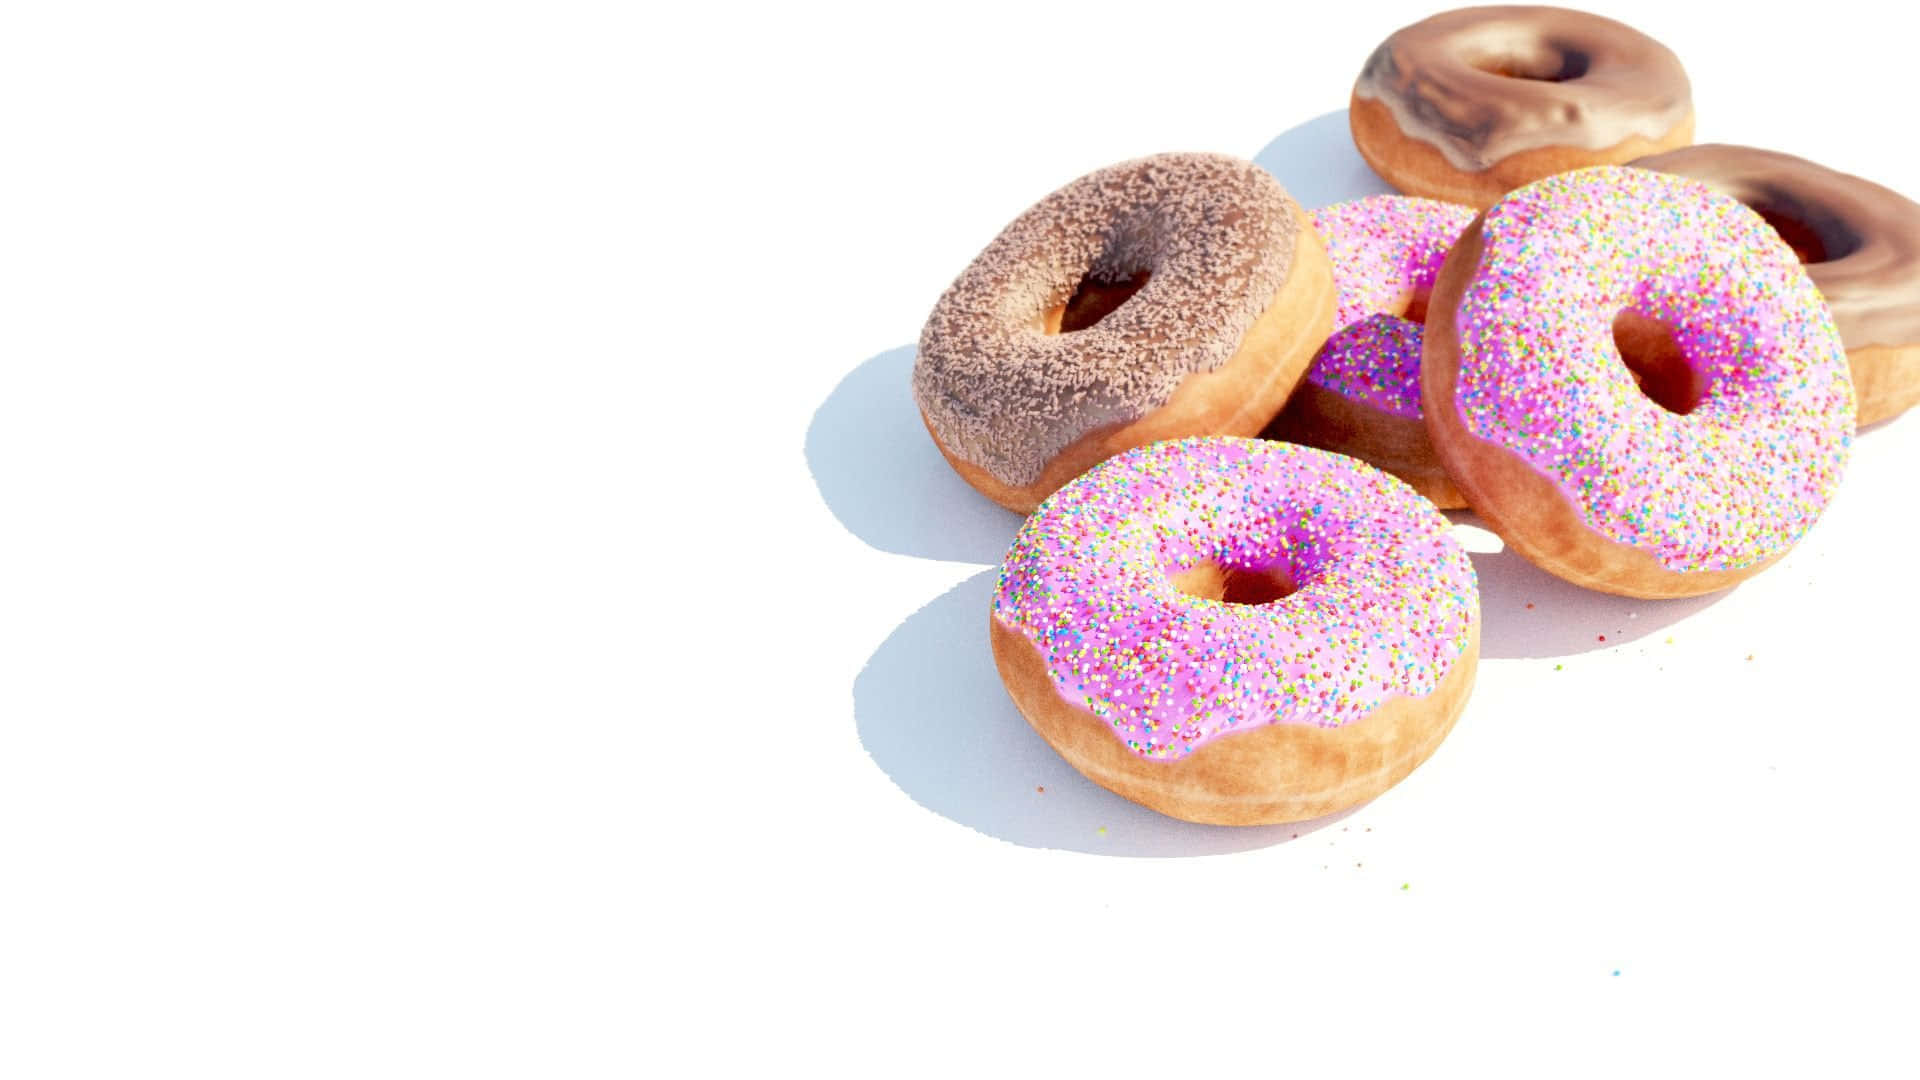 Genießensie Ihre Lieblings-dunkin' Donuts Zu Jeder Zeit, An Jedem Ort.